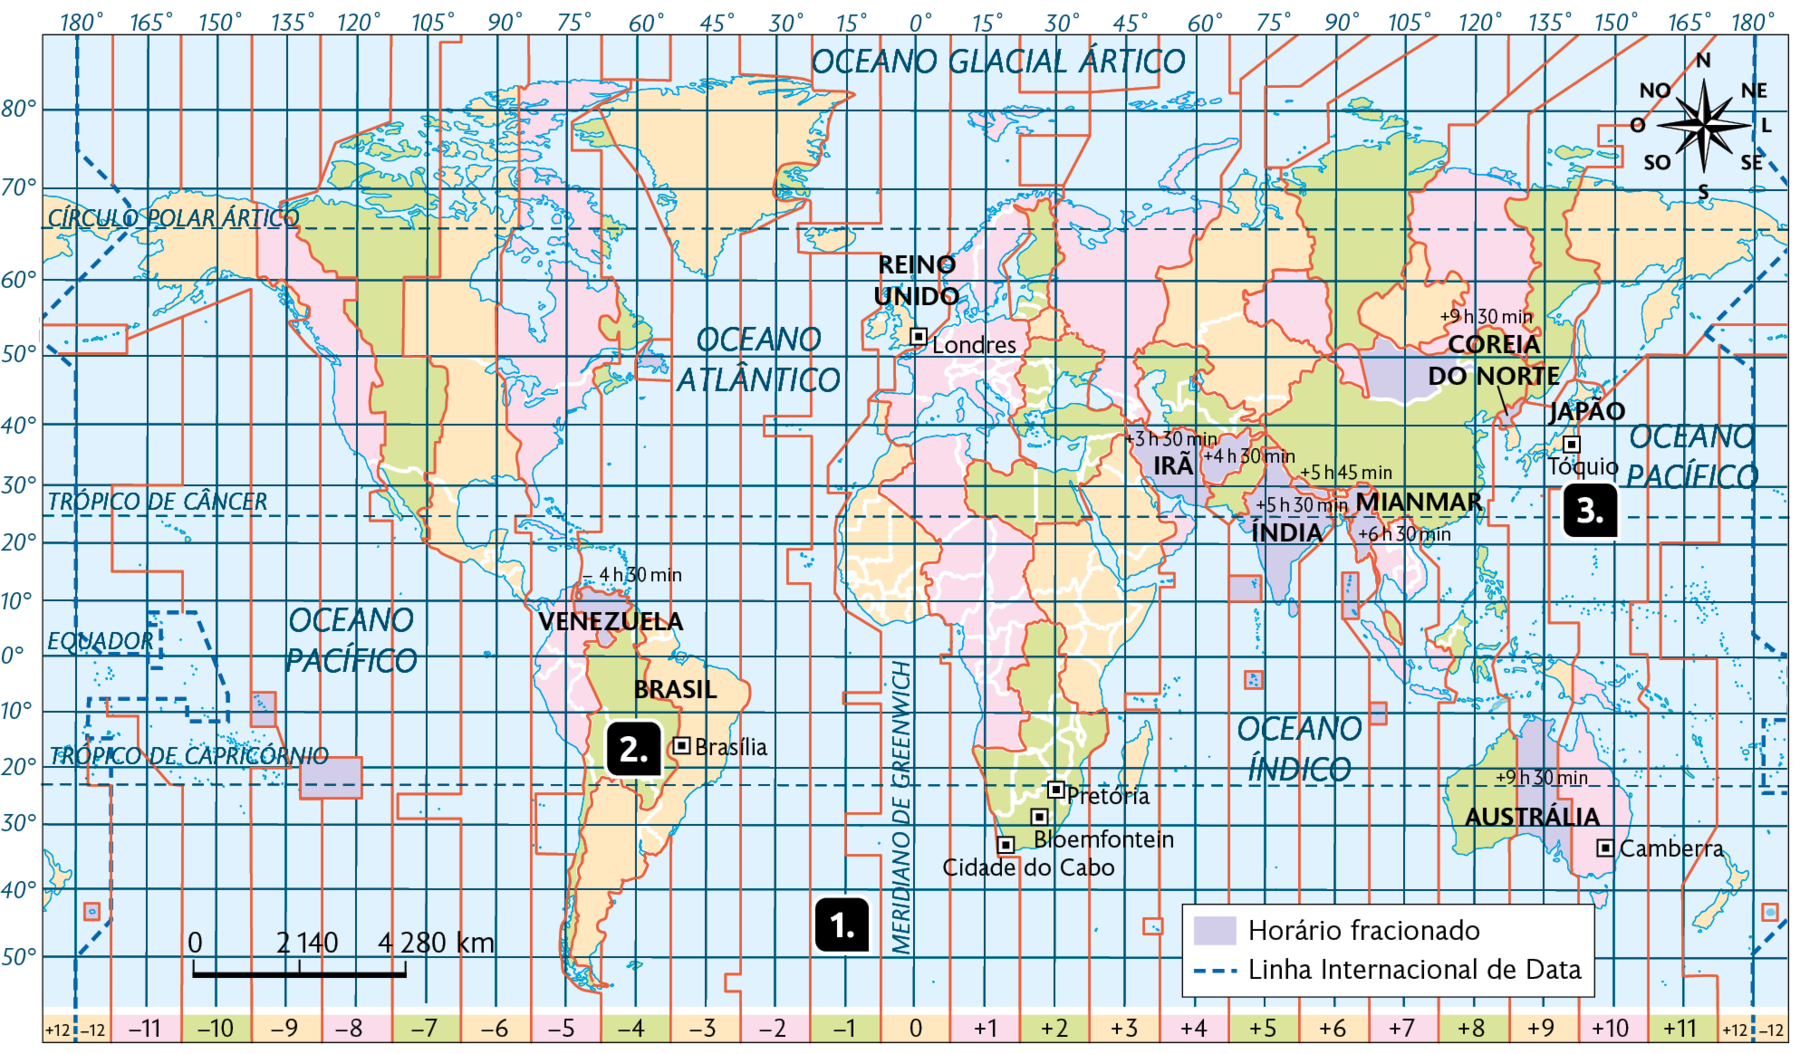 Mapa-múndi: fusos horários. 
O mapa mostra os continentes com linhas verticais da esquerda para direita indicadas como: menos 12, menos 11, menos 10, menos 9, menos 8, menos 7, menos 6, menos 5, menos 4, menos 3, menos 2, menos 1, 0, mais 1, mais 2, mais  3, mais  4, mais  5, mais  6, mais  7, mais 8, mais 9, mais 10, mais 11, mais 12. Estão indicados os pontos: Ponto 1, Meridiano de Greenwich em 0; Ponto 2, em menos 3 no Brasil; e Ponto 3, em mais 9 no Japão. No canto superior direito, a rosa dos ventos e no canto inferior esquerdo, a escala:  2140 quilômetros por centímetro.